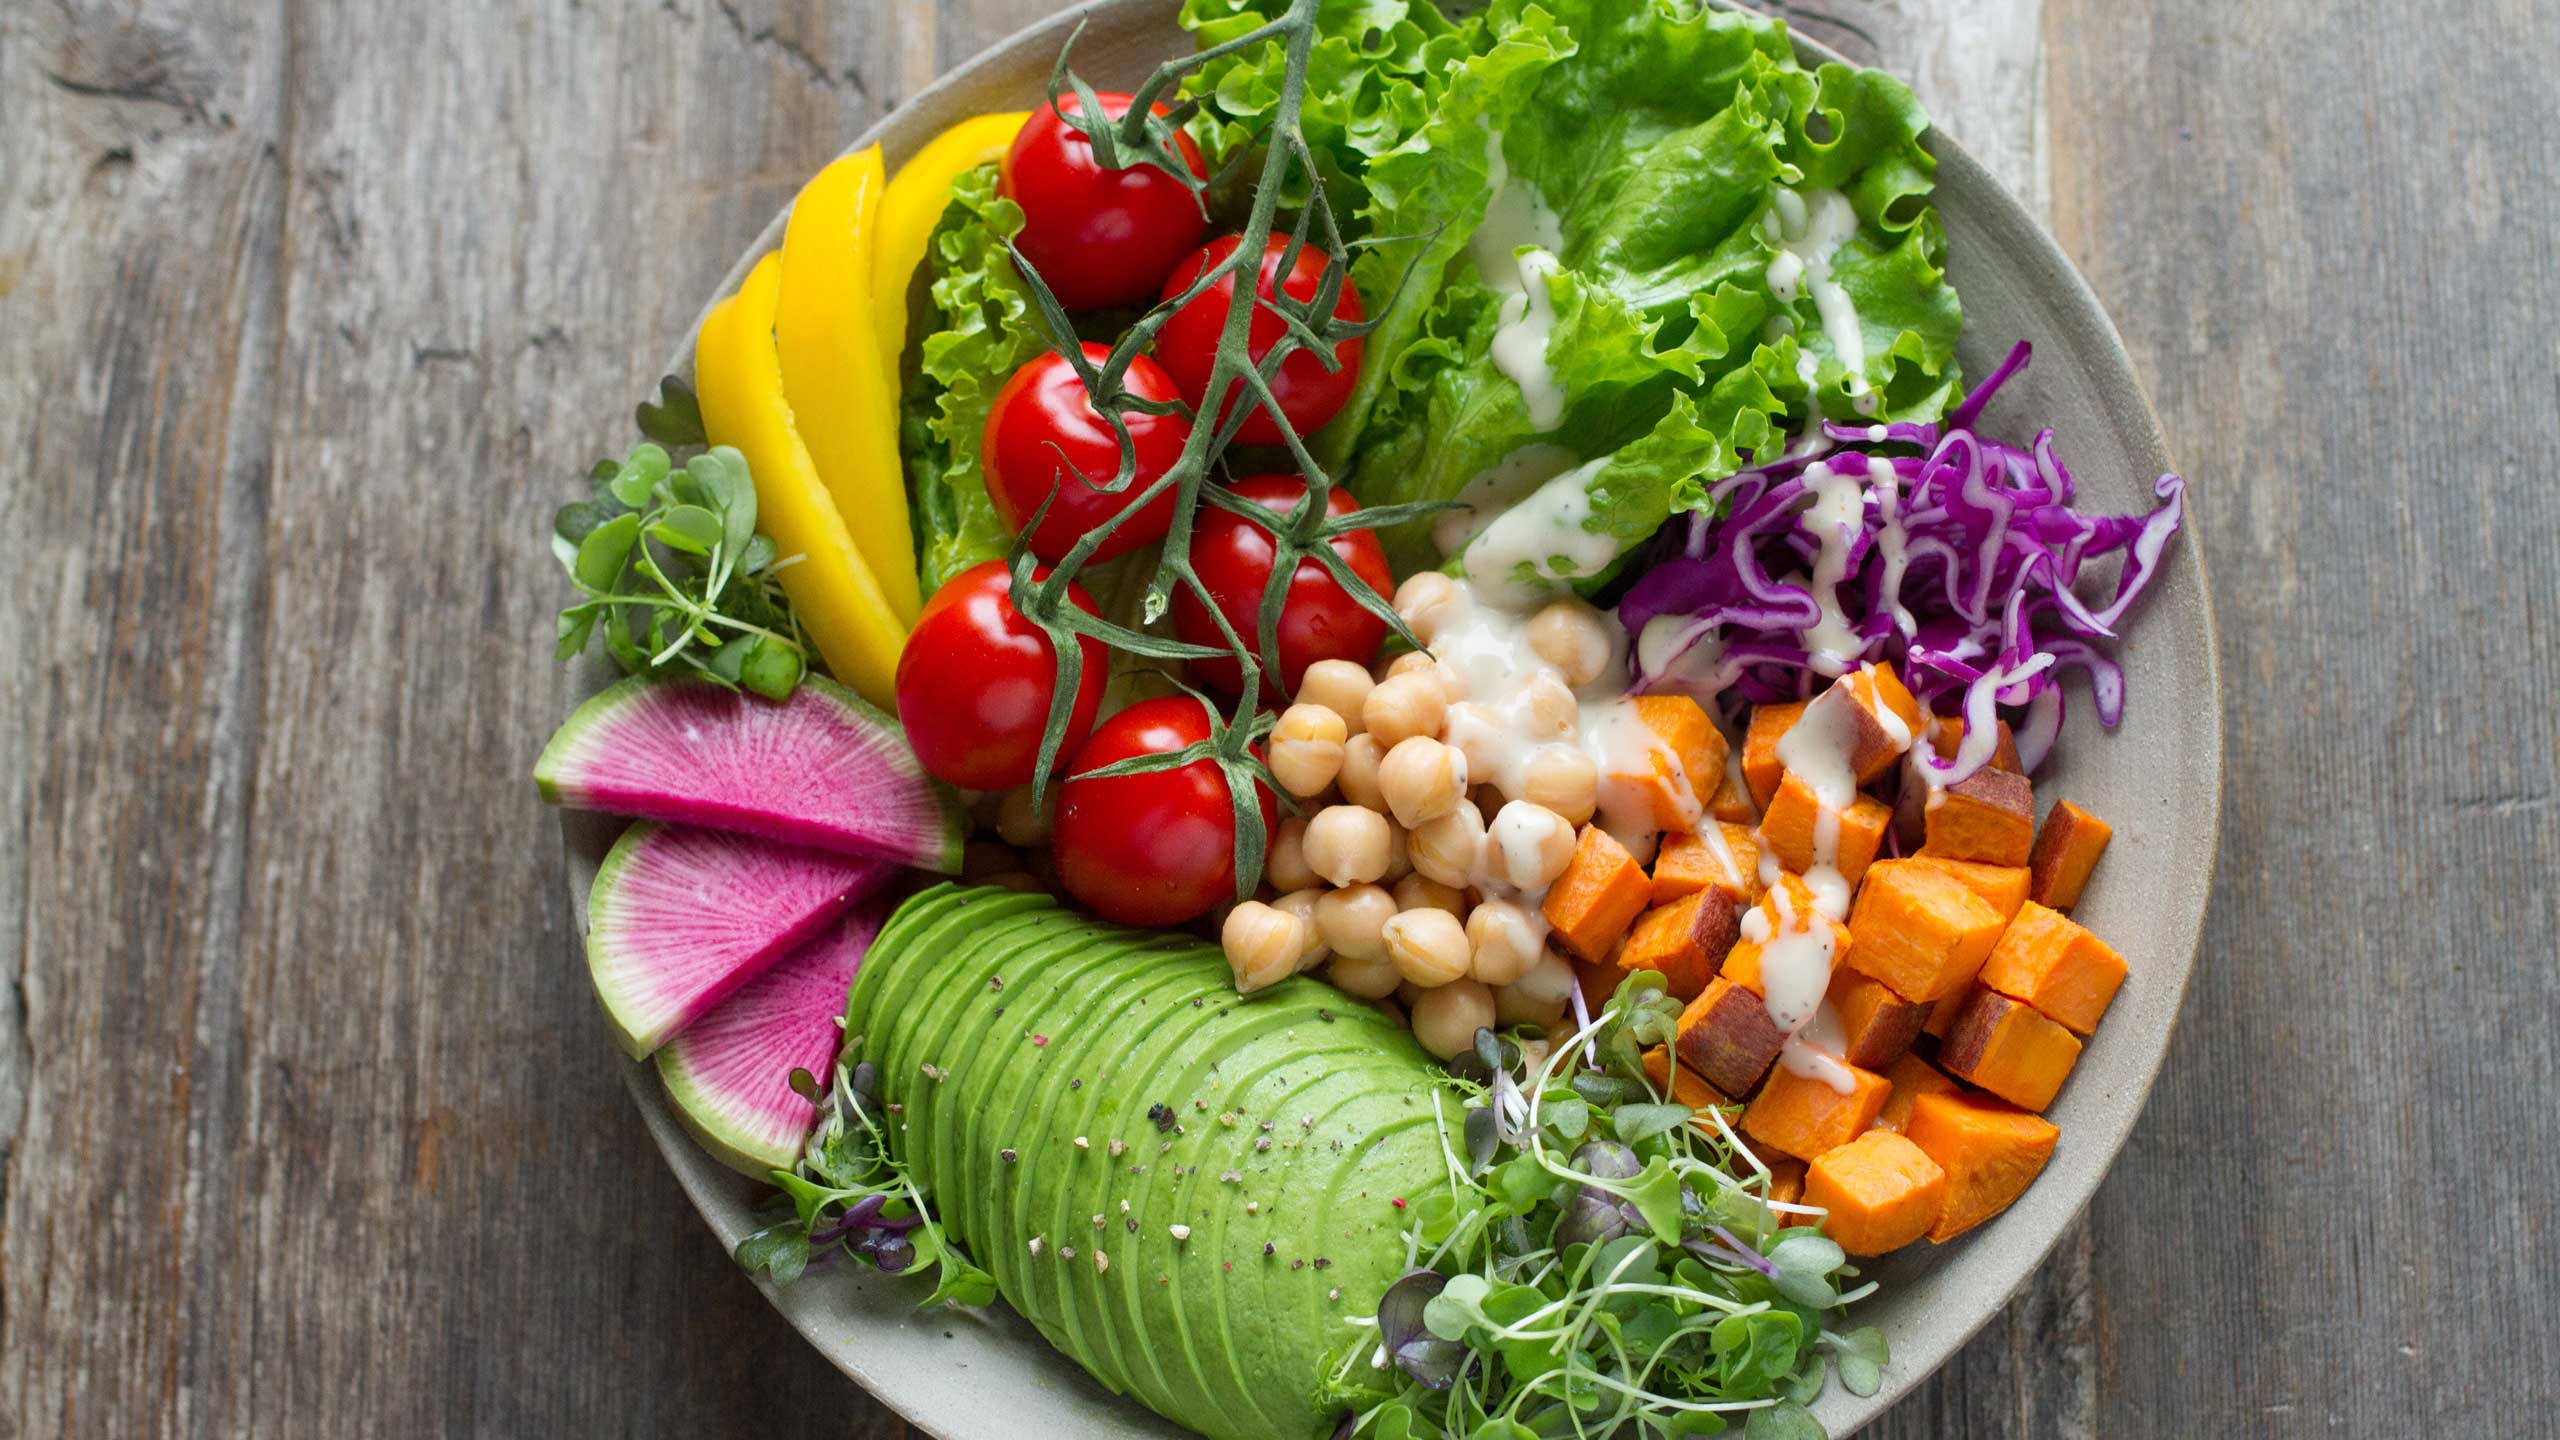 Bowl con verdura, alimentos naturales, alimentos funcionales